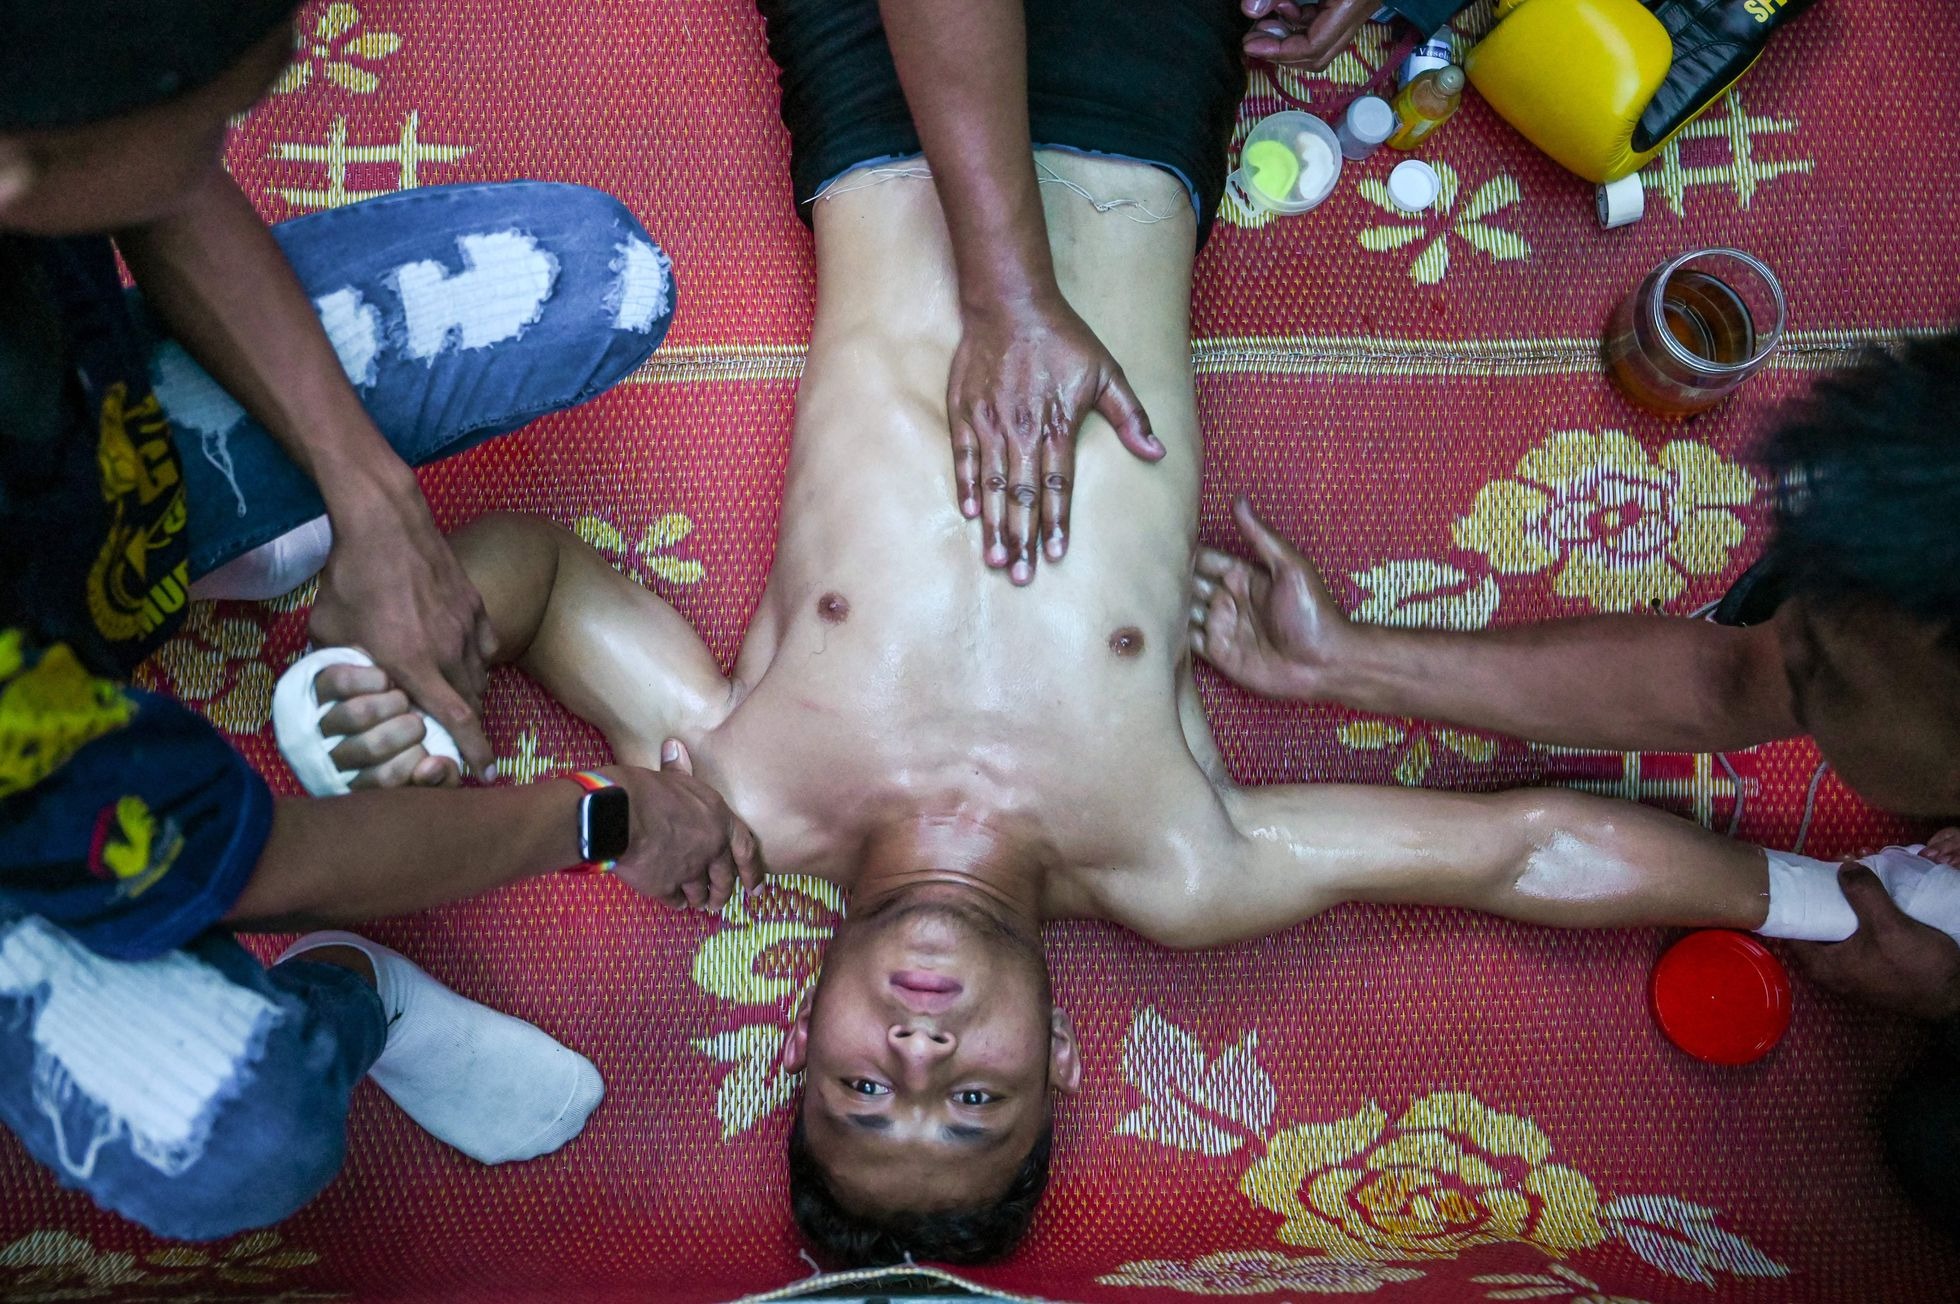 Codazos, rodillazos, rituales y escándalo: el “muay thai”, uno de los deportes más duros del mundo, llega a Netflix